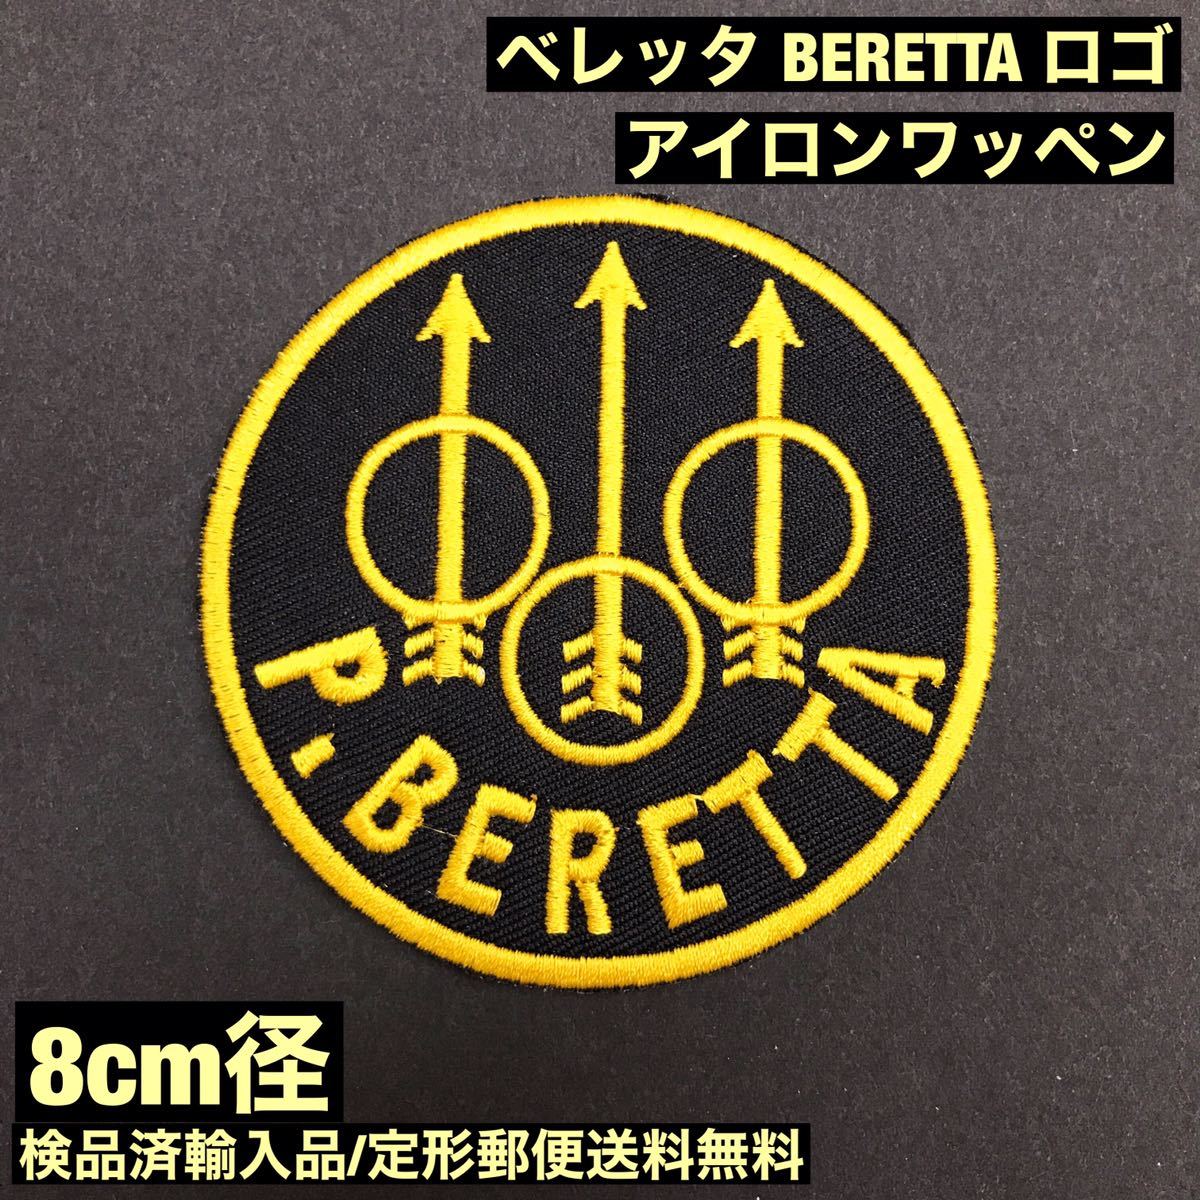 ベレッタ P・BERETTA ロゴ 約8cm径 アイロンワッペン クレー 銃 狩猟 サバゲー - 定形郵便送料無料 sonntagpatchesの画像1